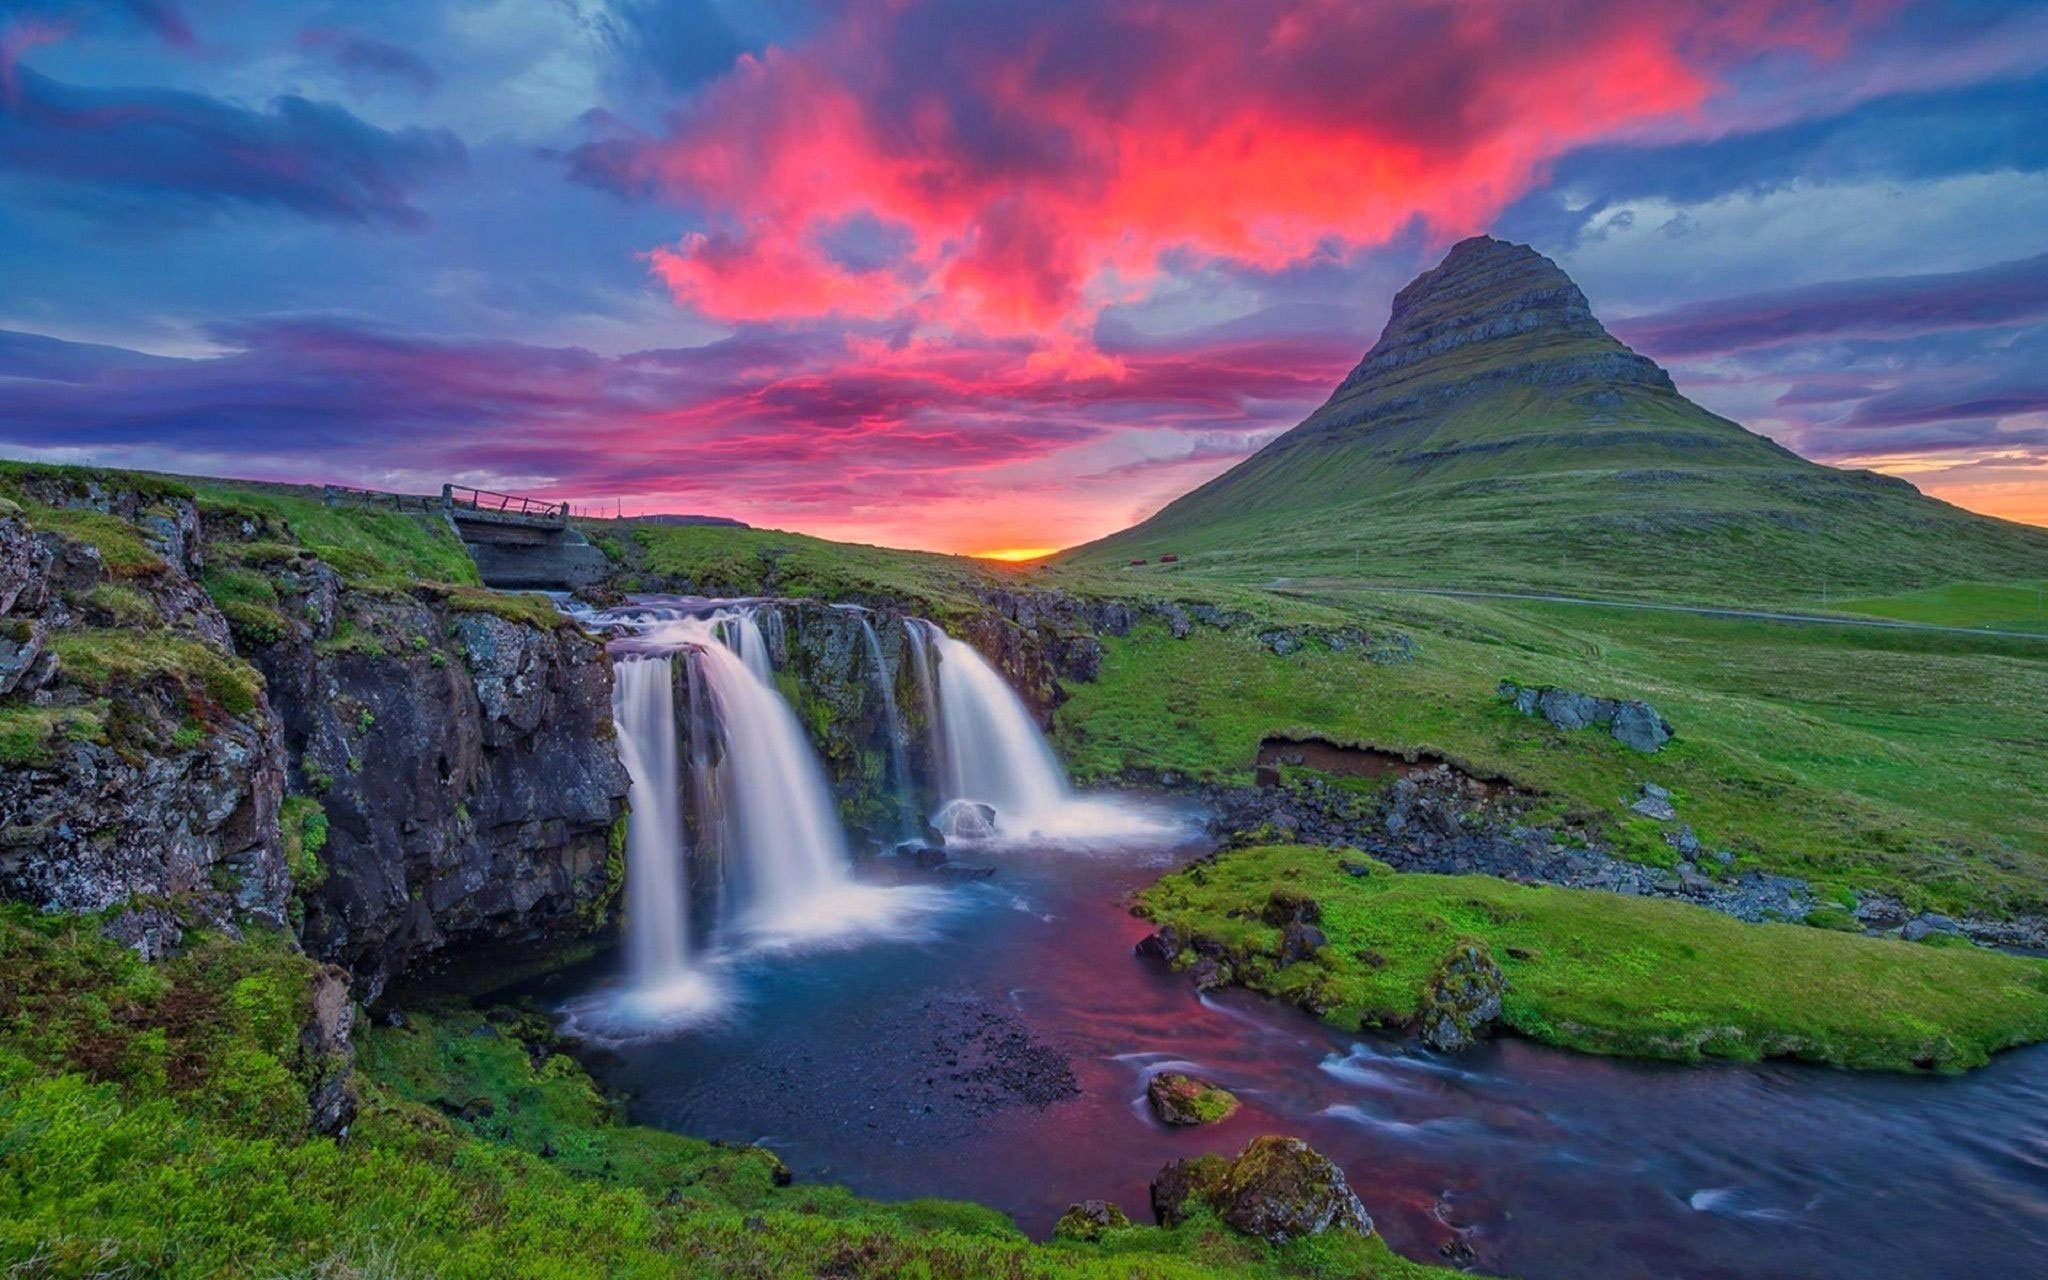 Самая красивая картинка природы в мире. LG 42lb561v. Телевизор LG 42lb561v. Водопад Годафосс, Исландия. Исландия Рейкьявик природа.